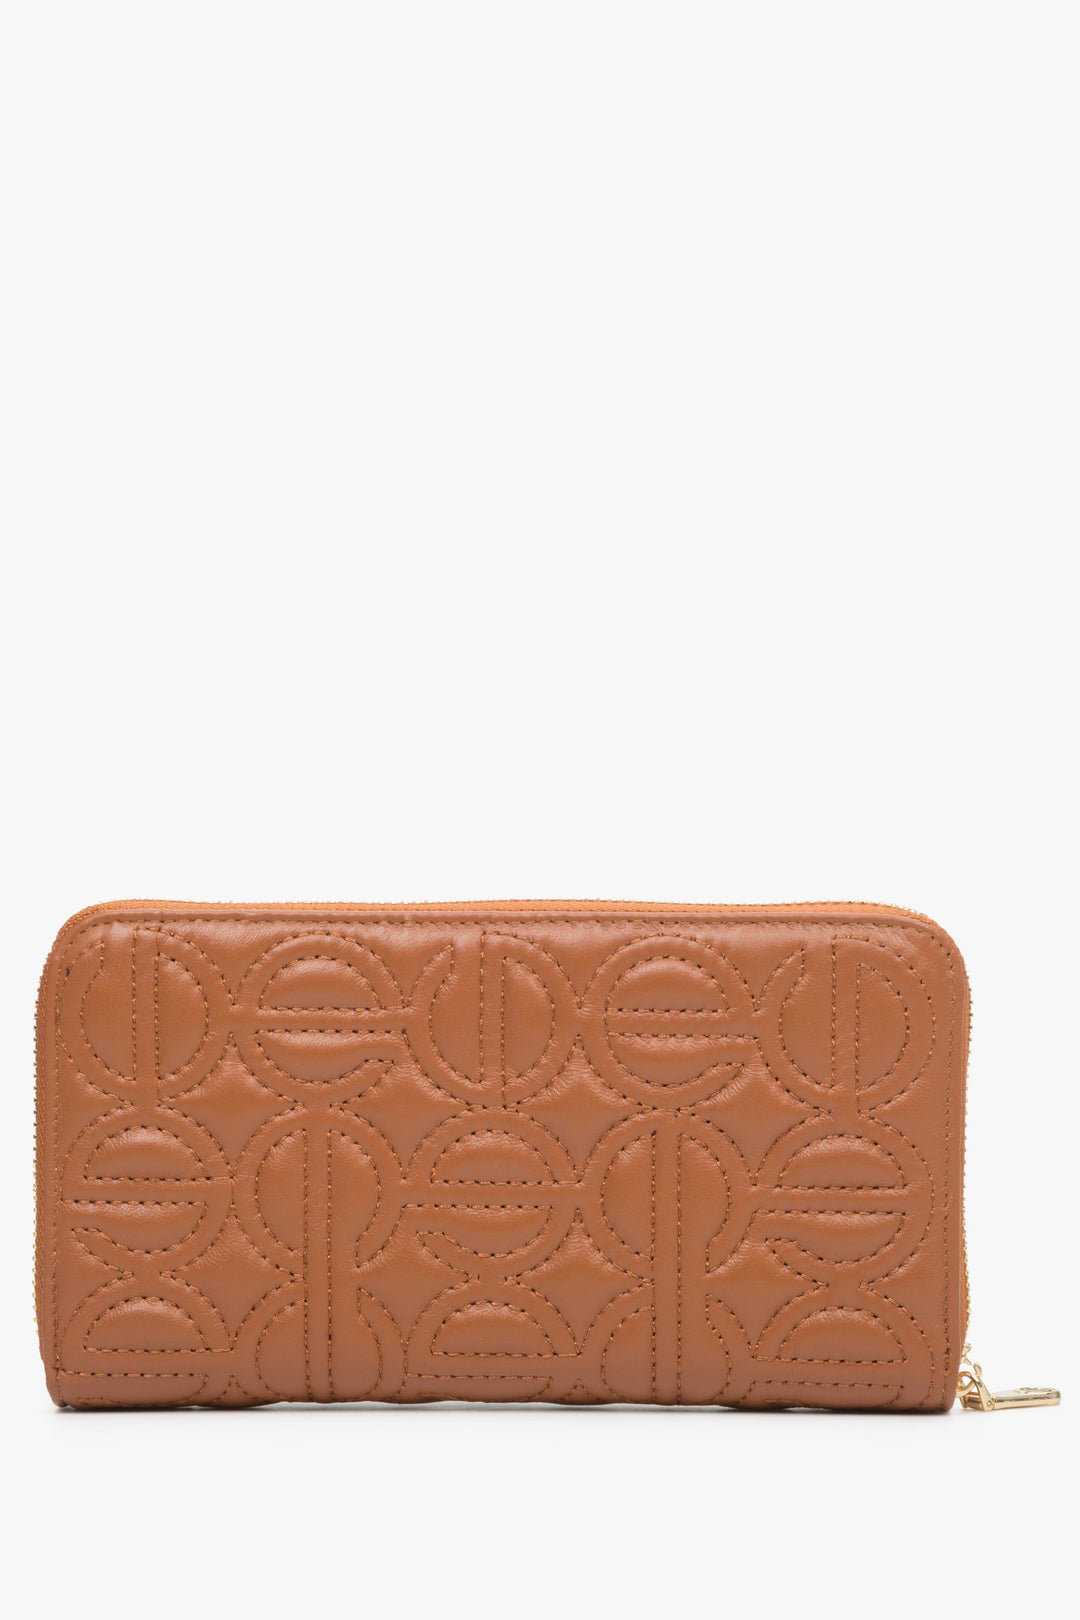 Brązowy, skórzany portfel damski z tłoczonym logo marki Estro.